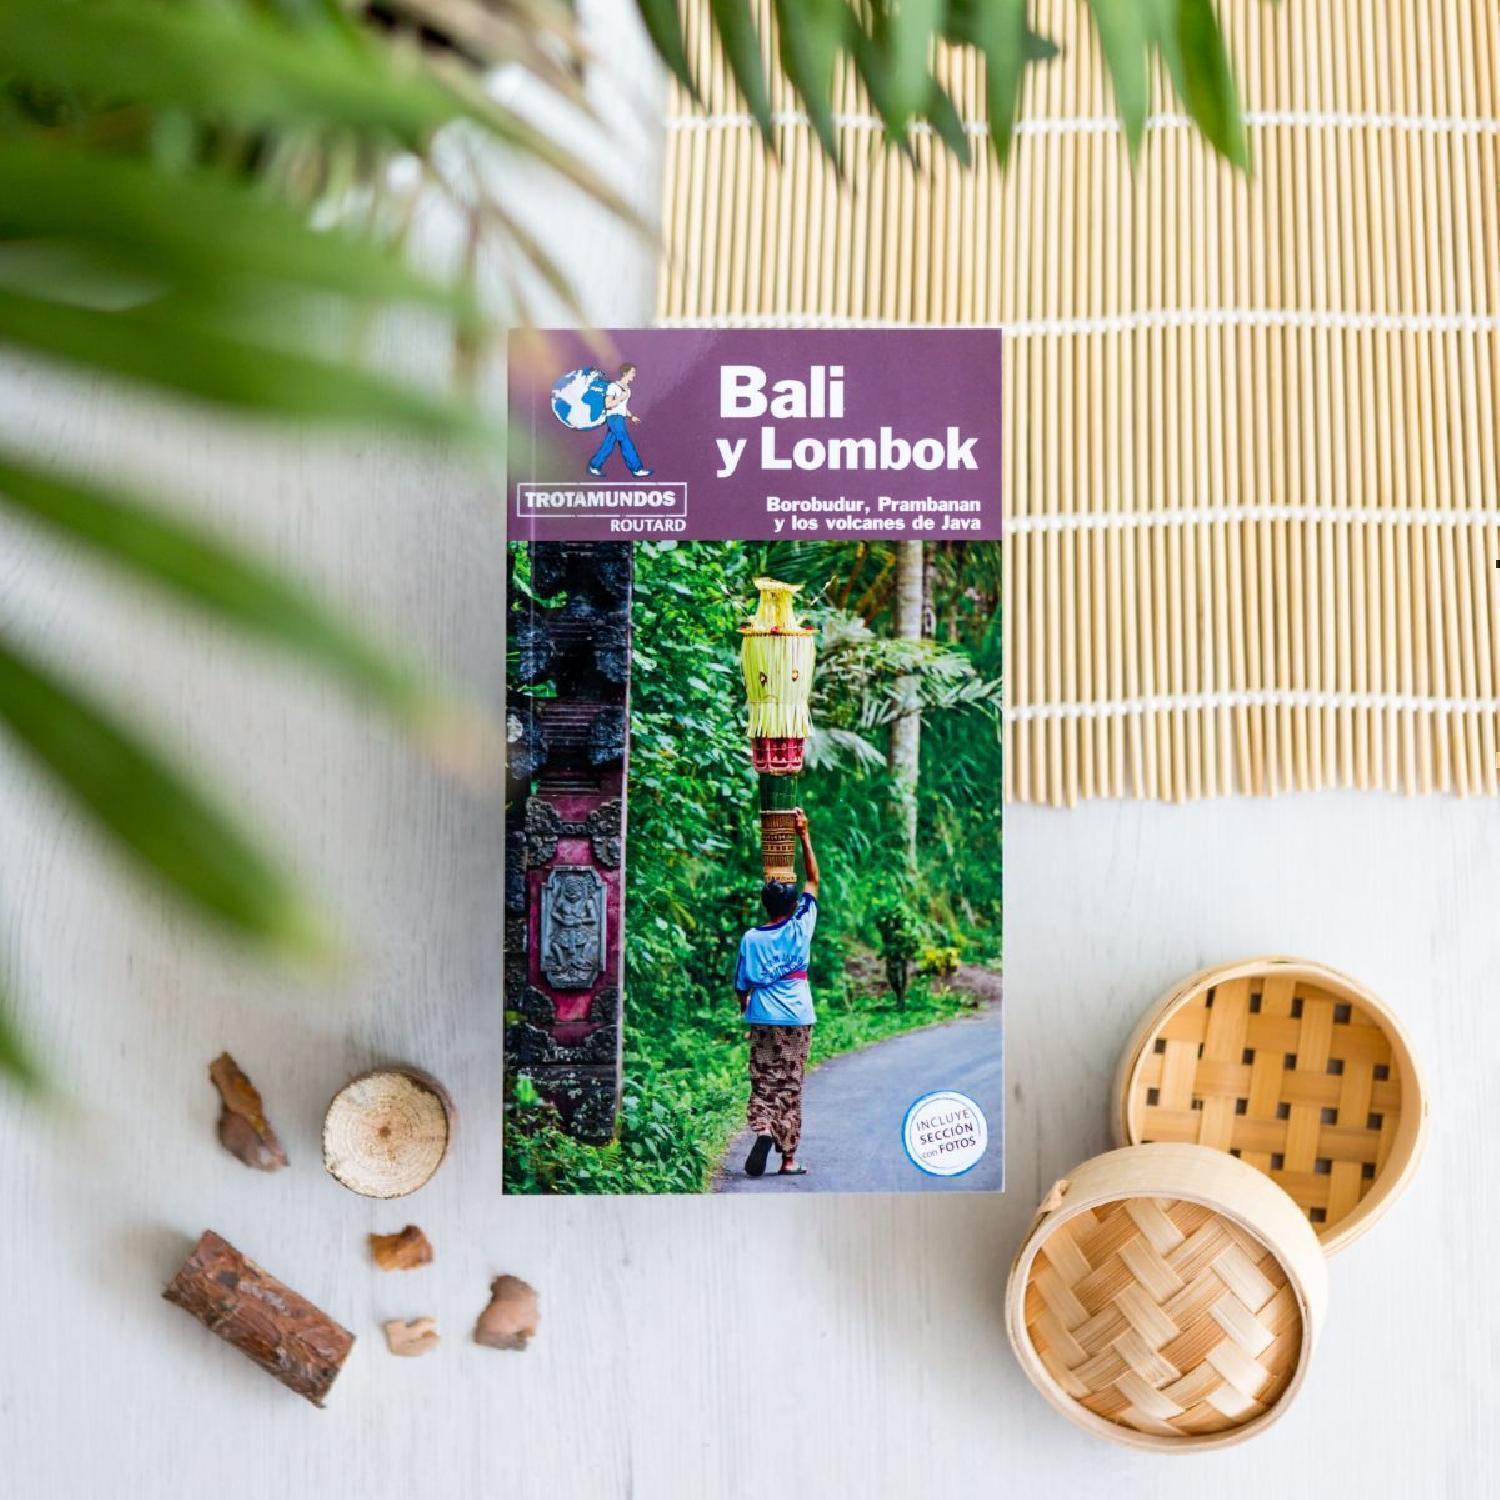 Guía de viaje a Bali y Lombok de Anaya Trotamundos